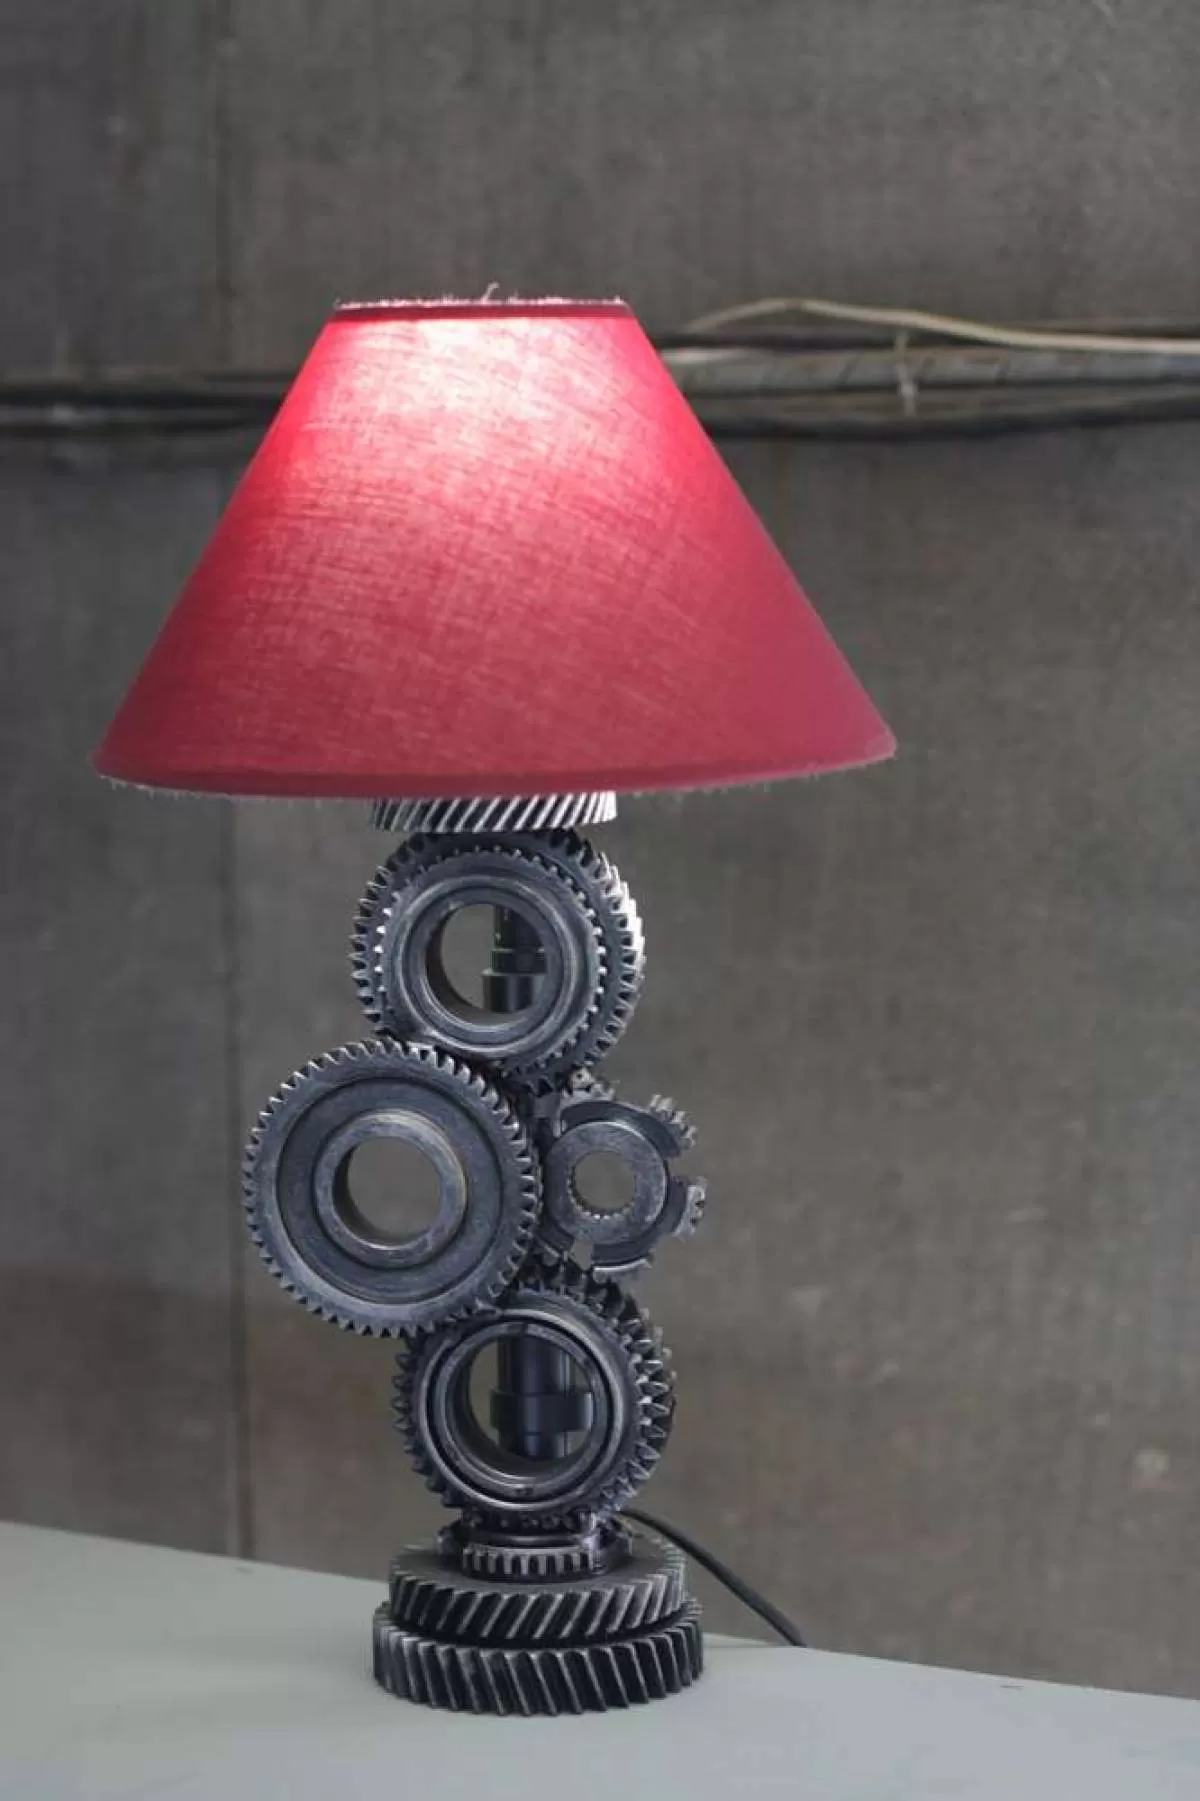 Светильник «Шестерни» с красным абажуром. Фотография 4